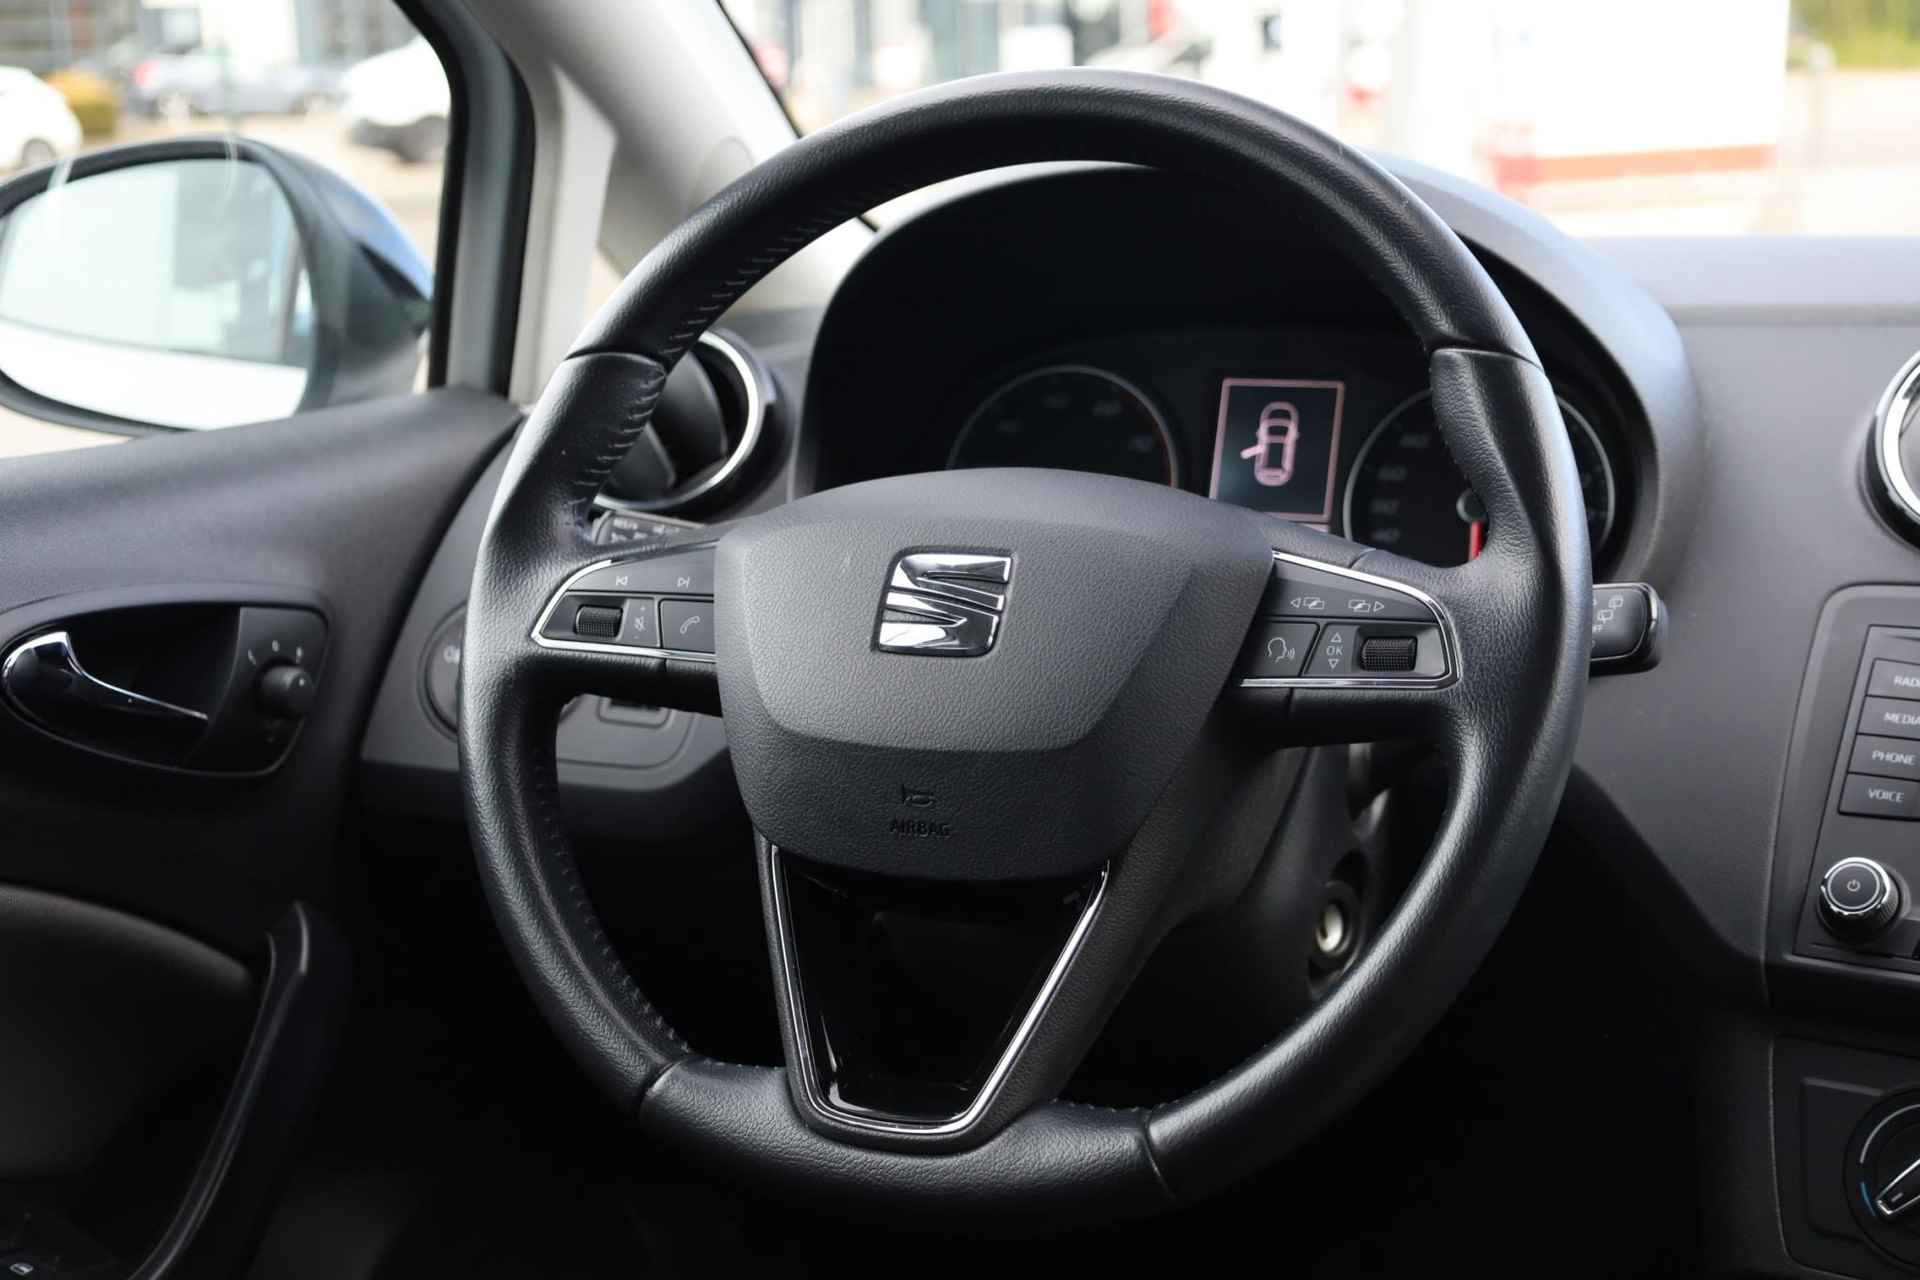 SEAT Ibiza 1.0 EcoTSI Style Connect 95PK / 70kW, 16" LMV zwart, navigatie, cruise control, parkeersensoren, multifunctioneel lederen stuurwiel, licht sensor, zwarte spiegelkappen + zwarte accenten, spiegels elektrisch inklapbaar - 20/38